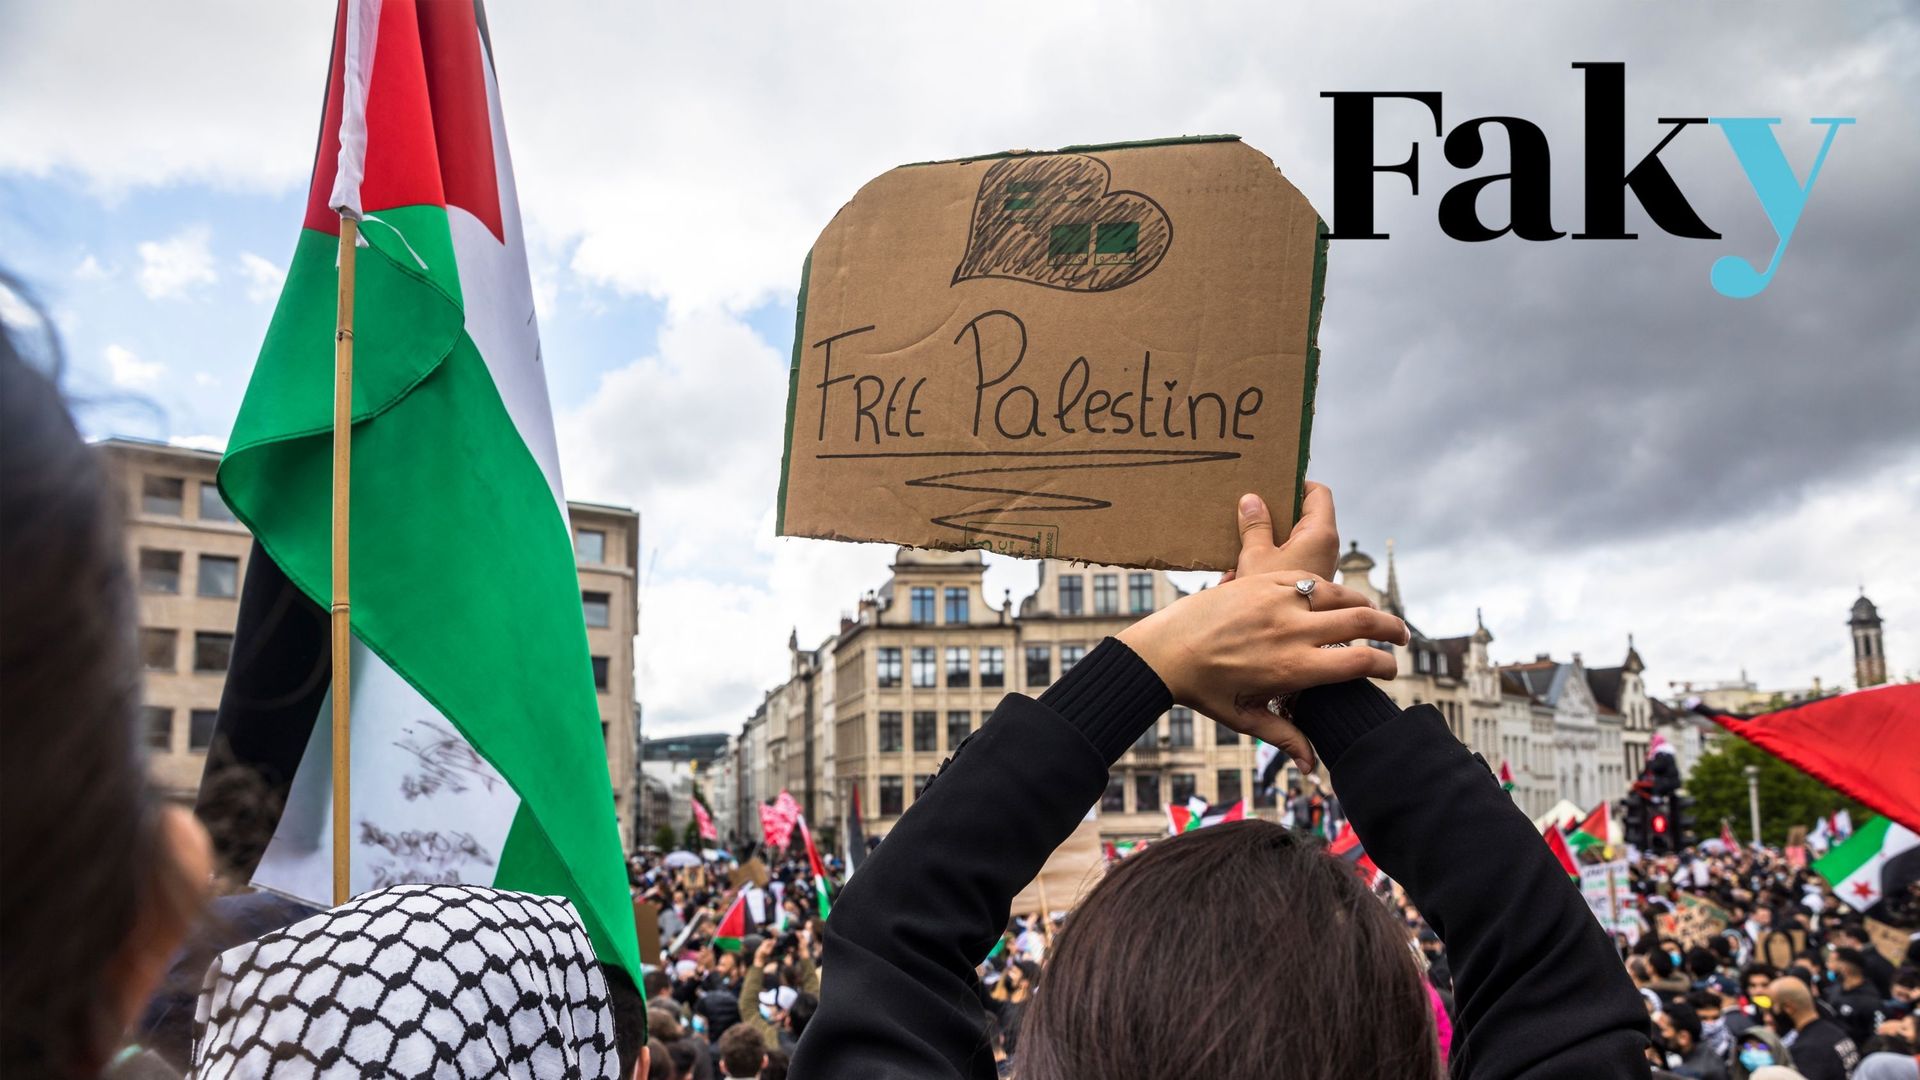 Des manifestants se sont rassemblés pour une manifestation en solidarité avec les Palestiniens et pour dénoncer les bombardements israéliens, samedi 15 mai 2021 à Bruxelles.